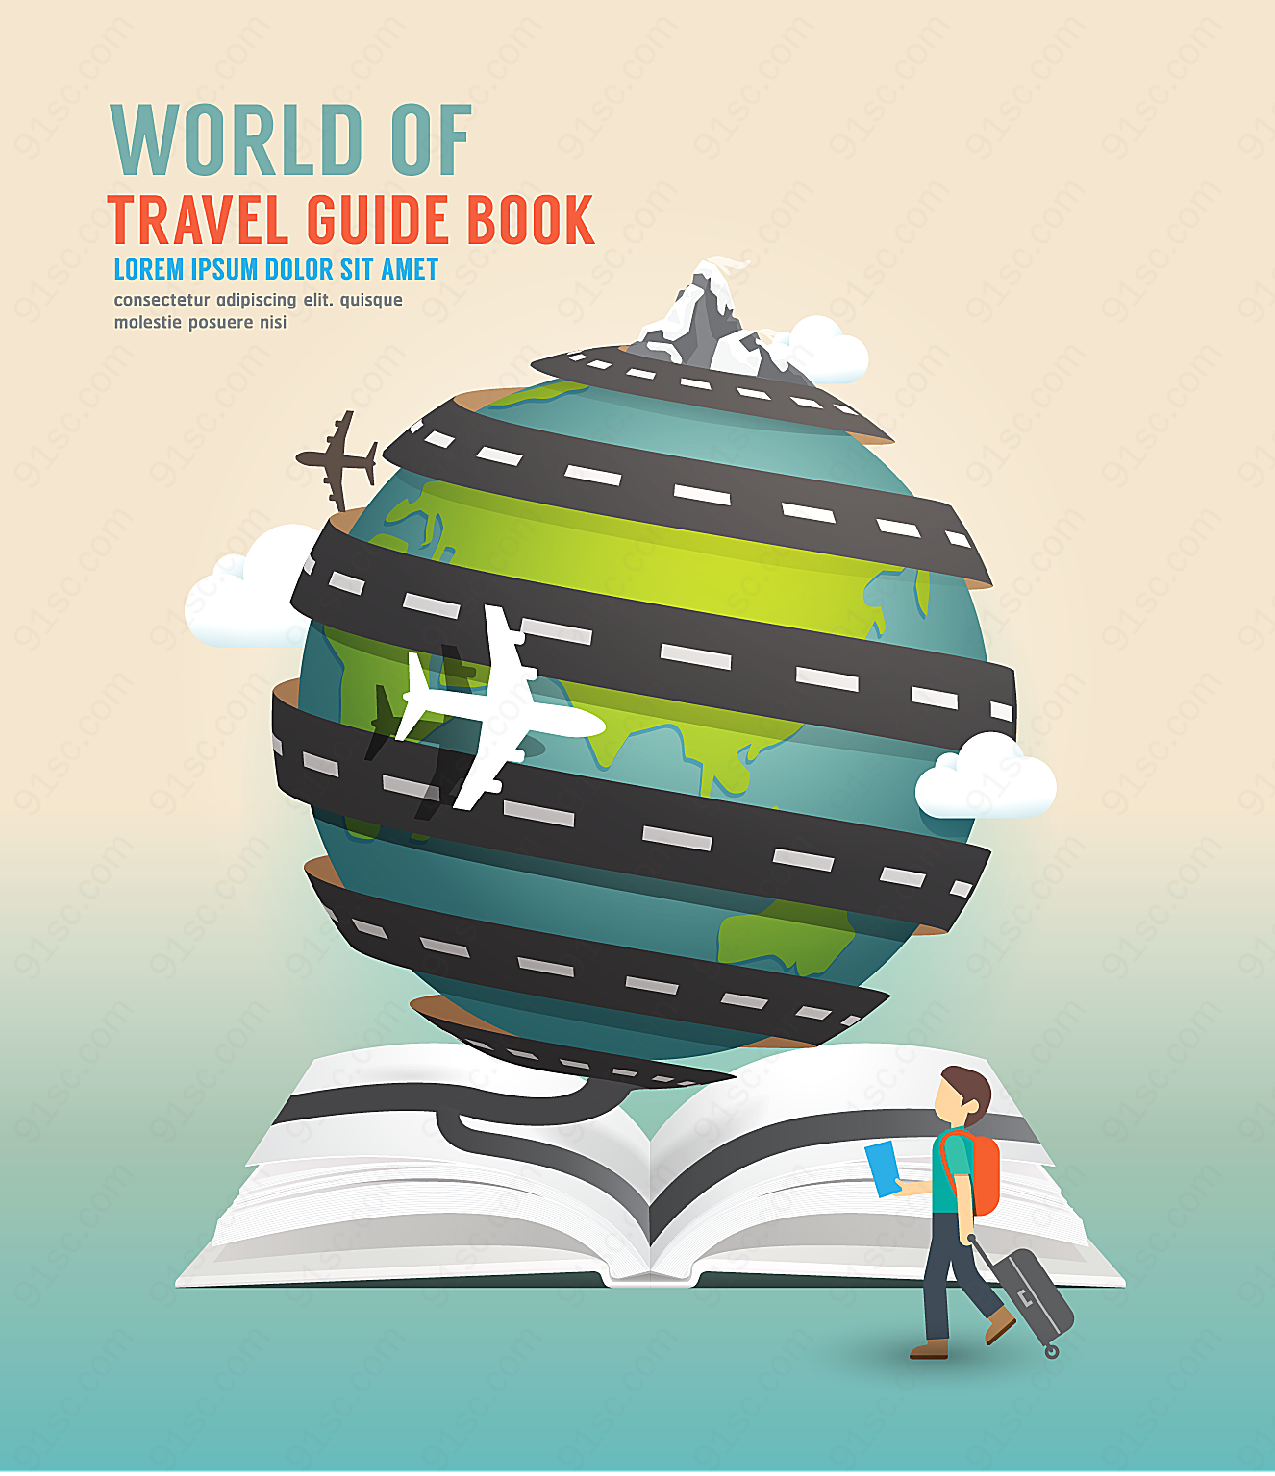 环球旅行指南书籍平面广告